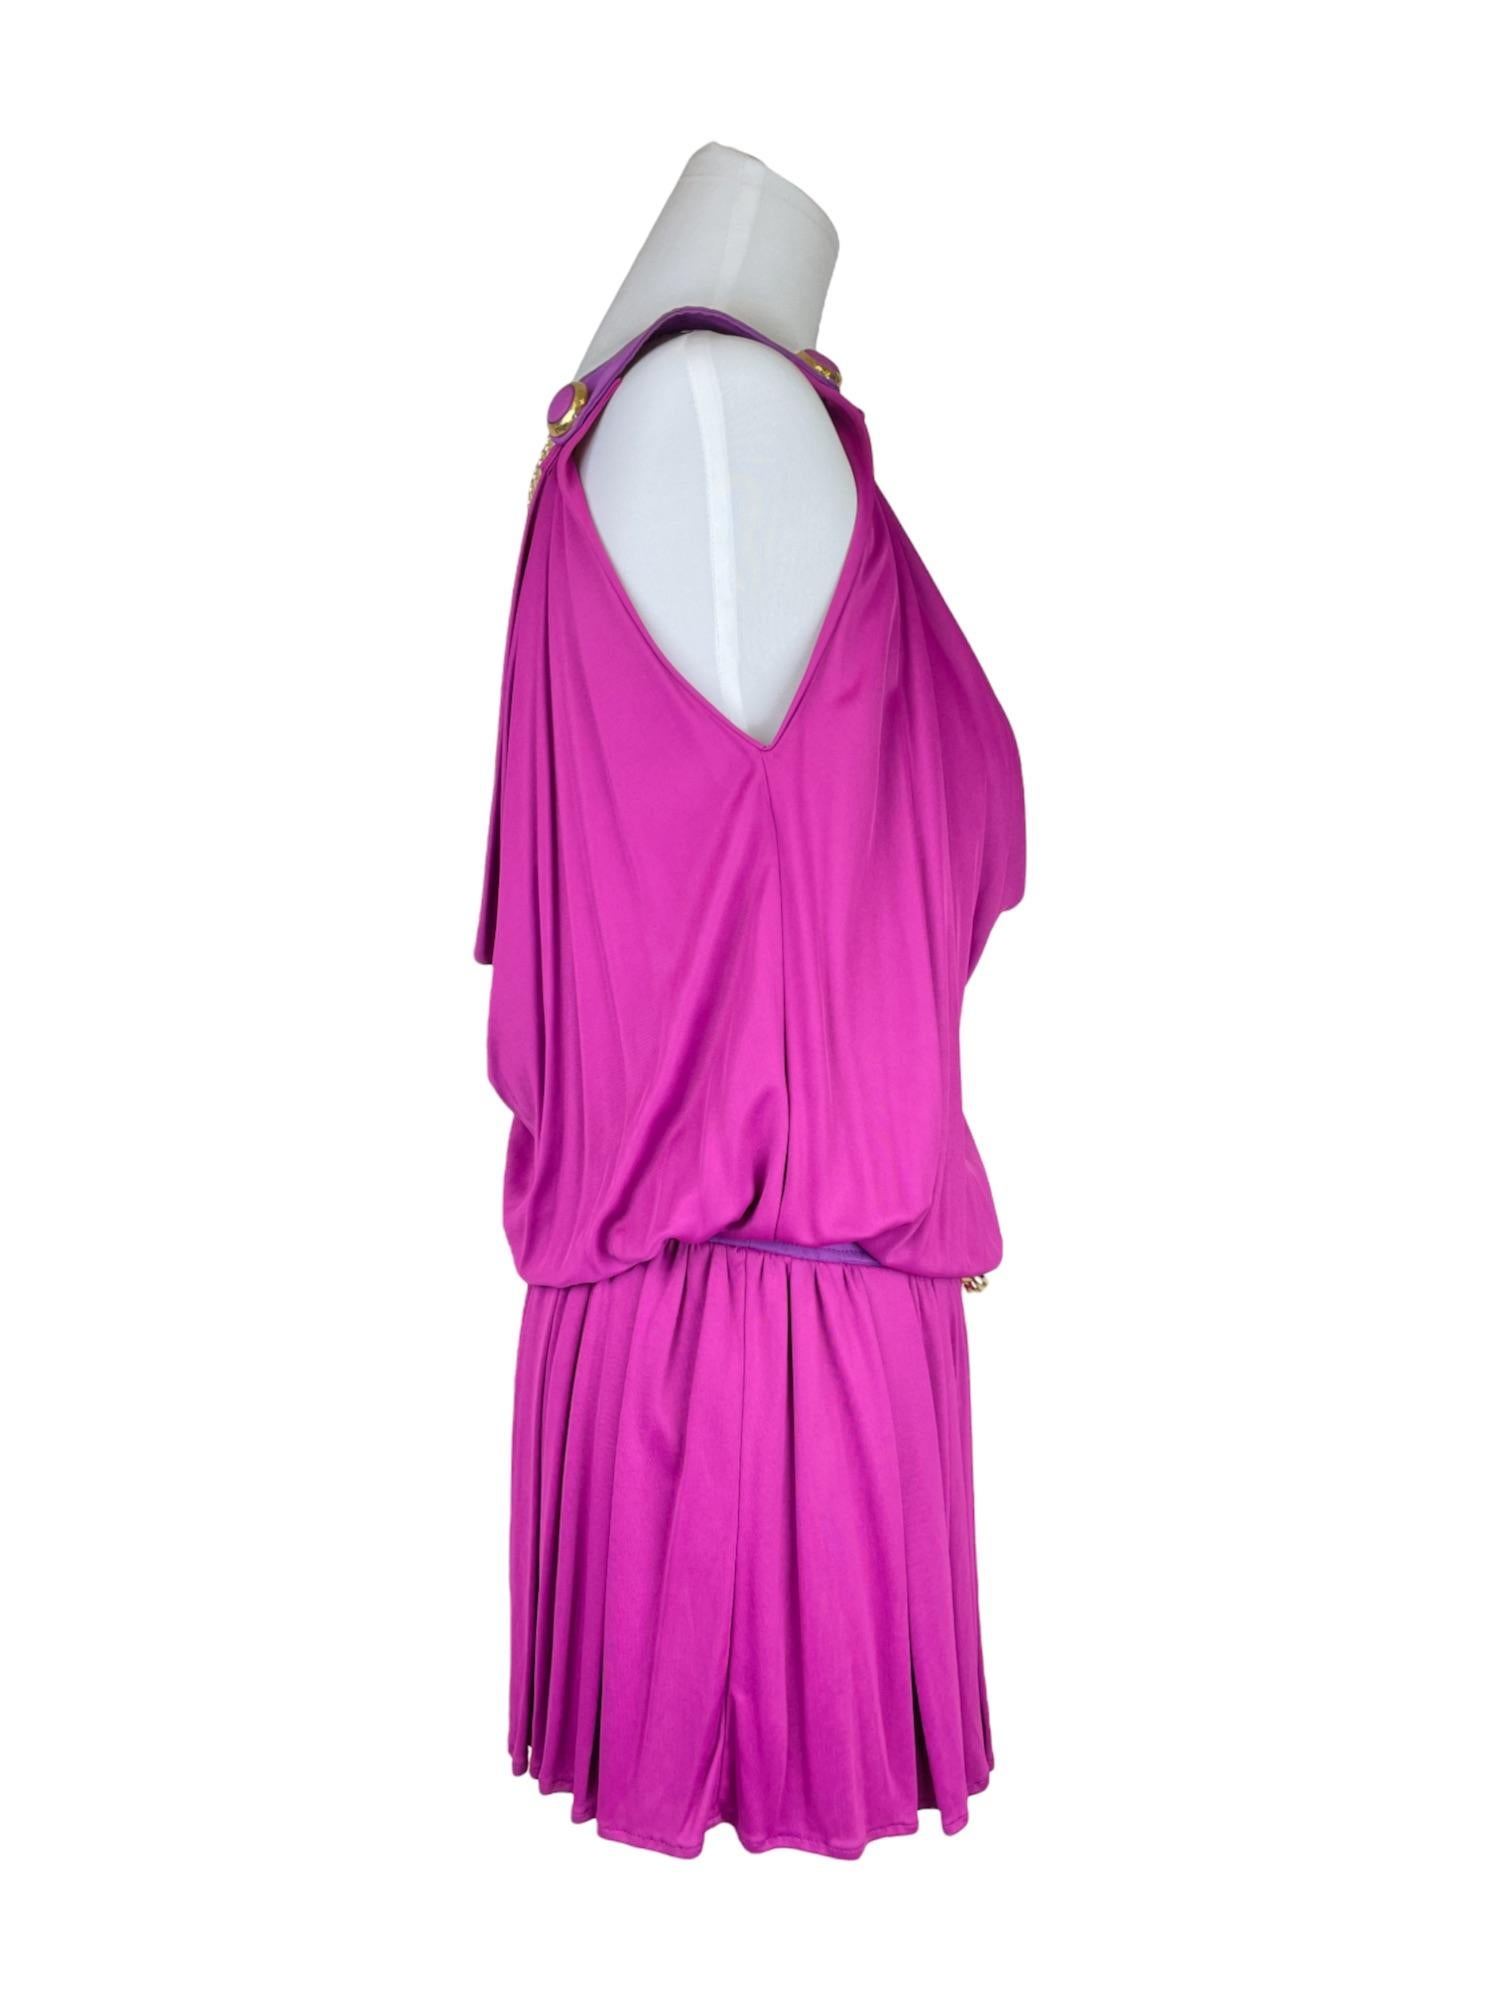 D&G Greek Purple Dress
Spring / Summer 2007
-
NO RETURNS